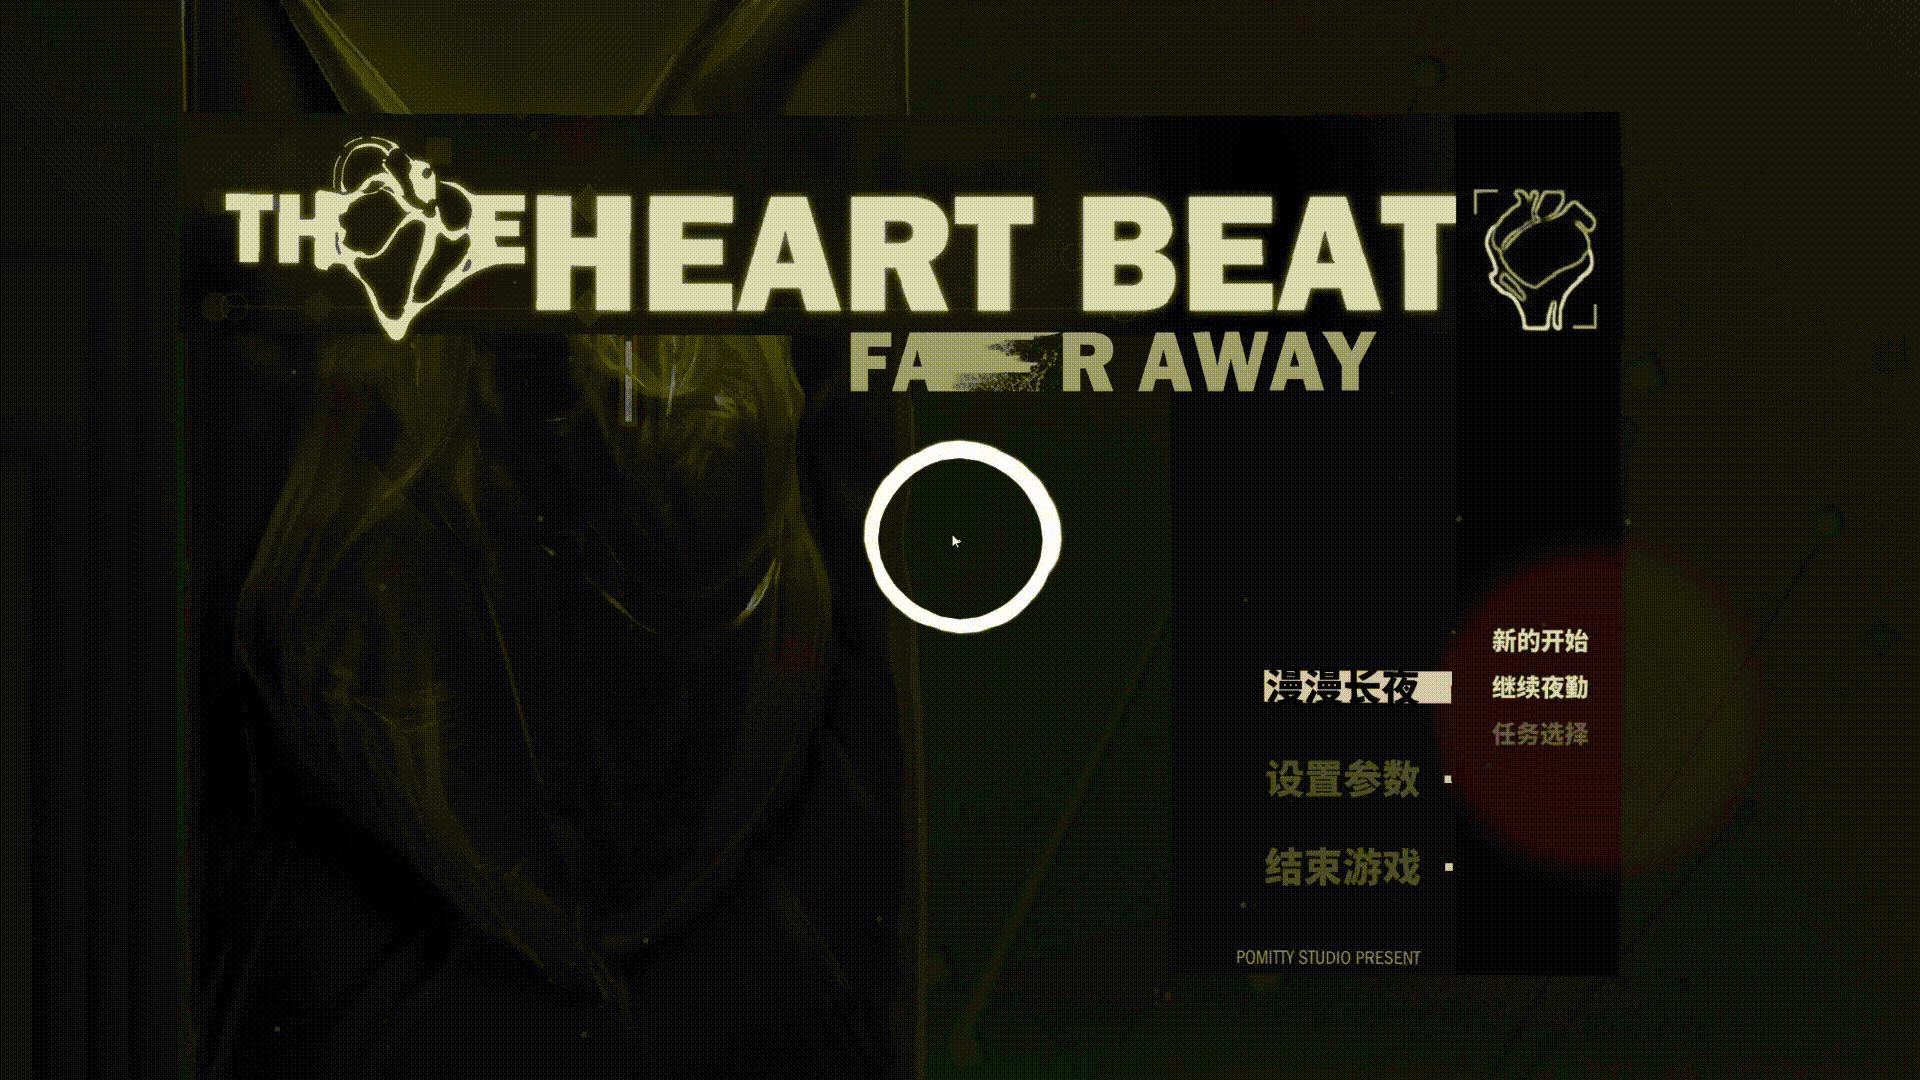 Heartbeat Faraway